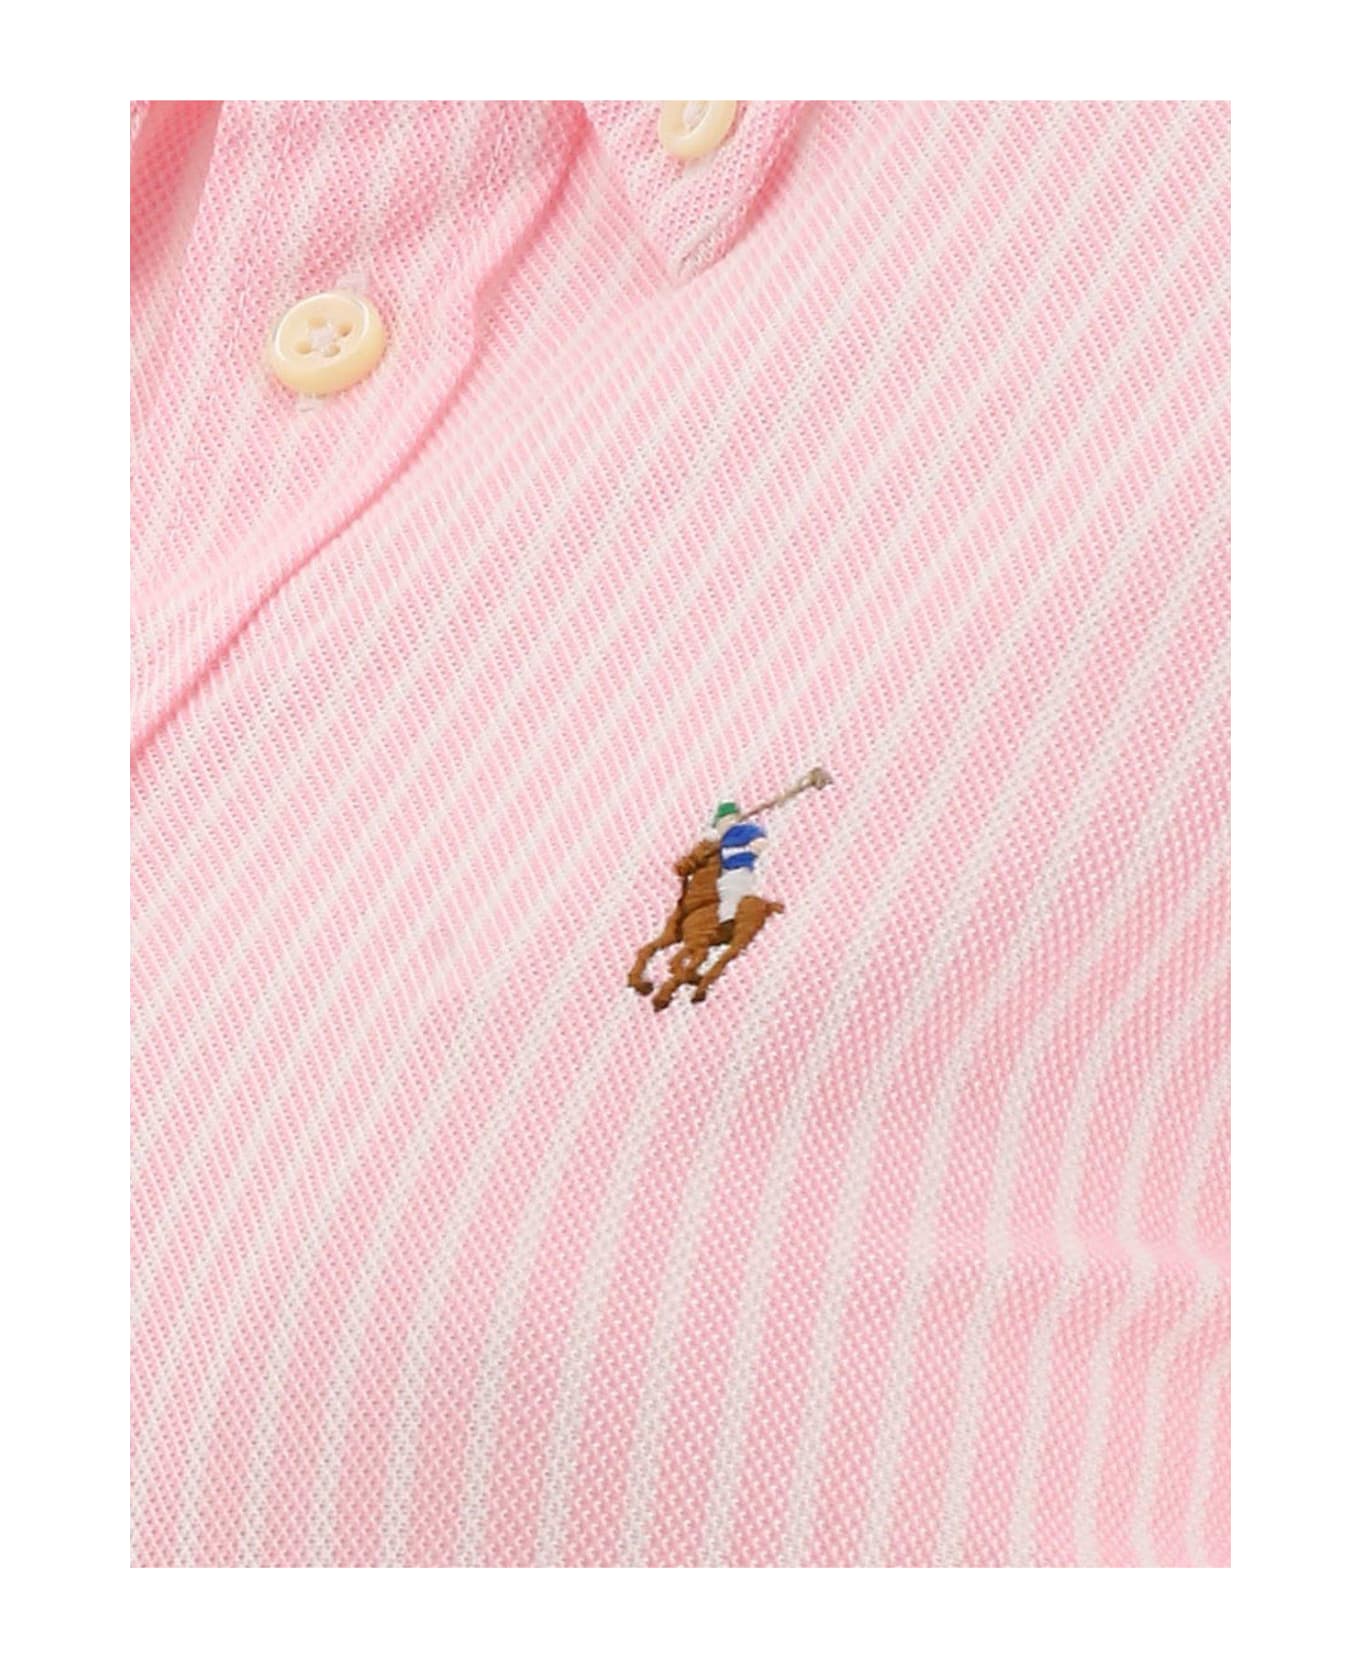 Ralph Lauren Striped Long-sleeved Shirt - Carmel Pink White シャツ